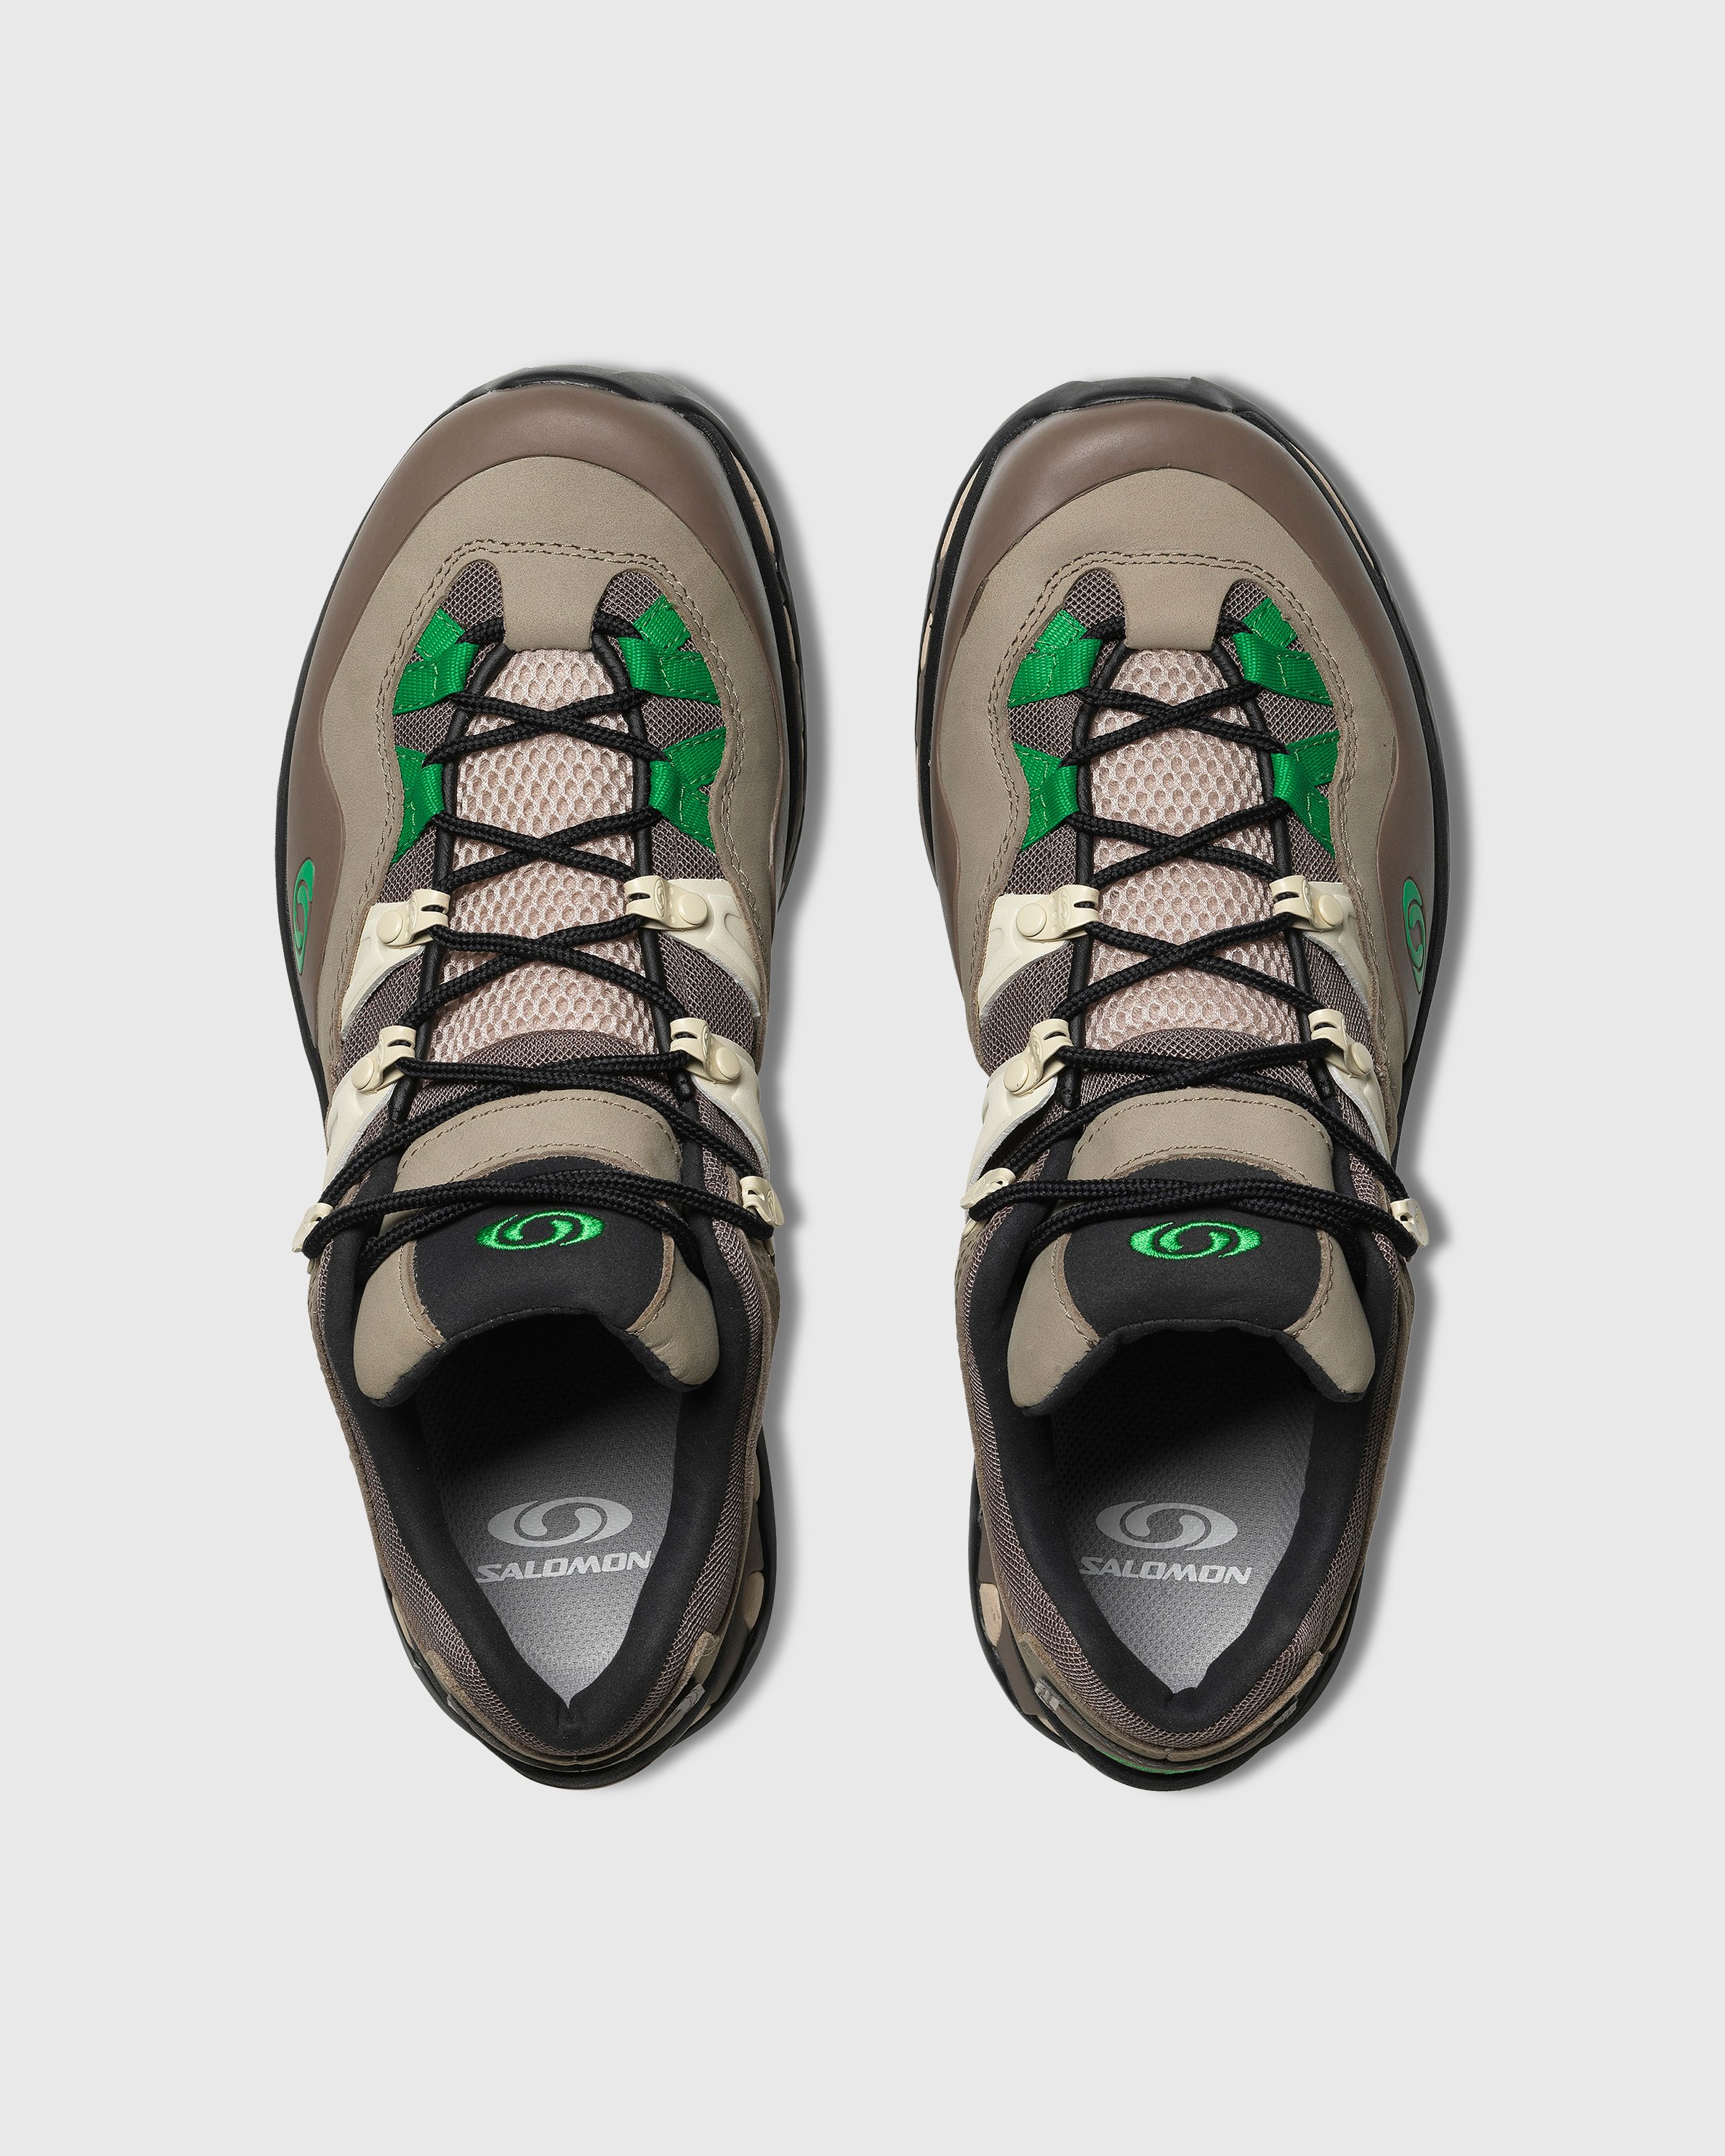 Salomon - XT-QUEST 2 Falcon/Cement/Bright Green - Footwear - Multi - Image 3